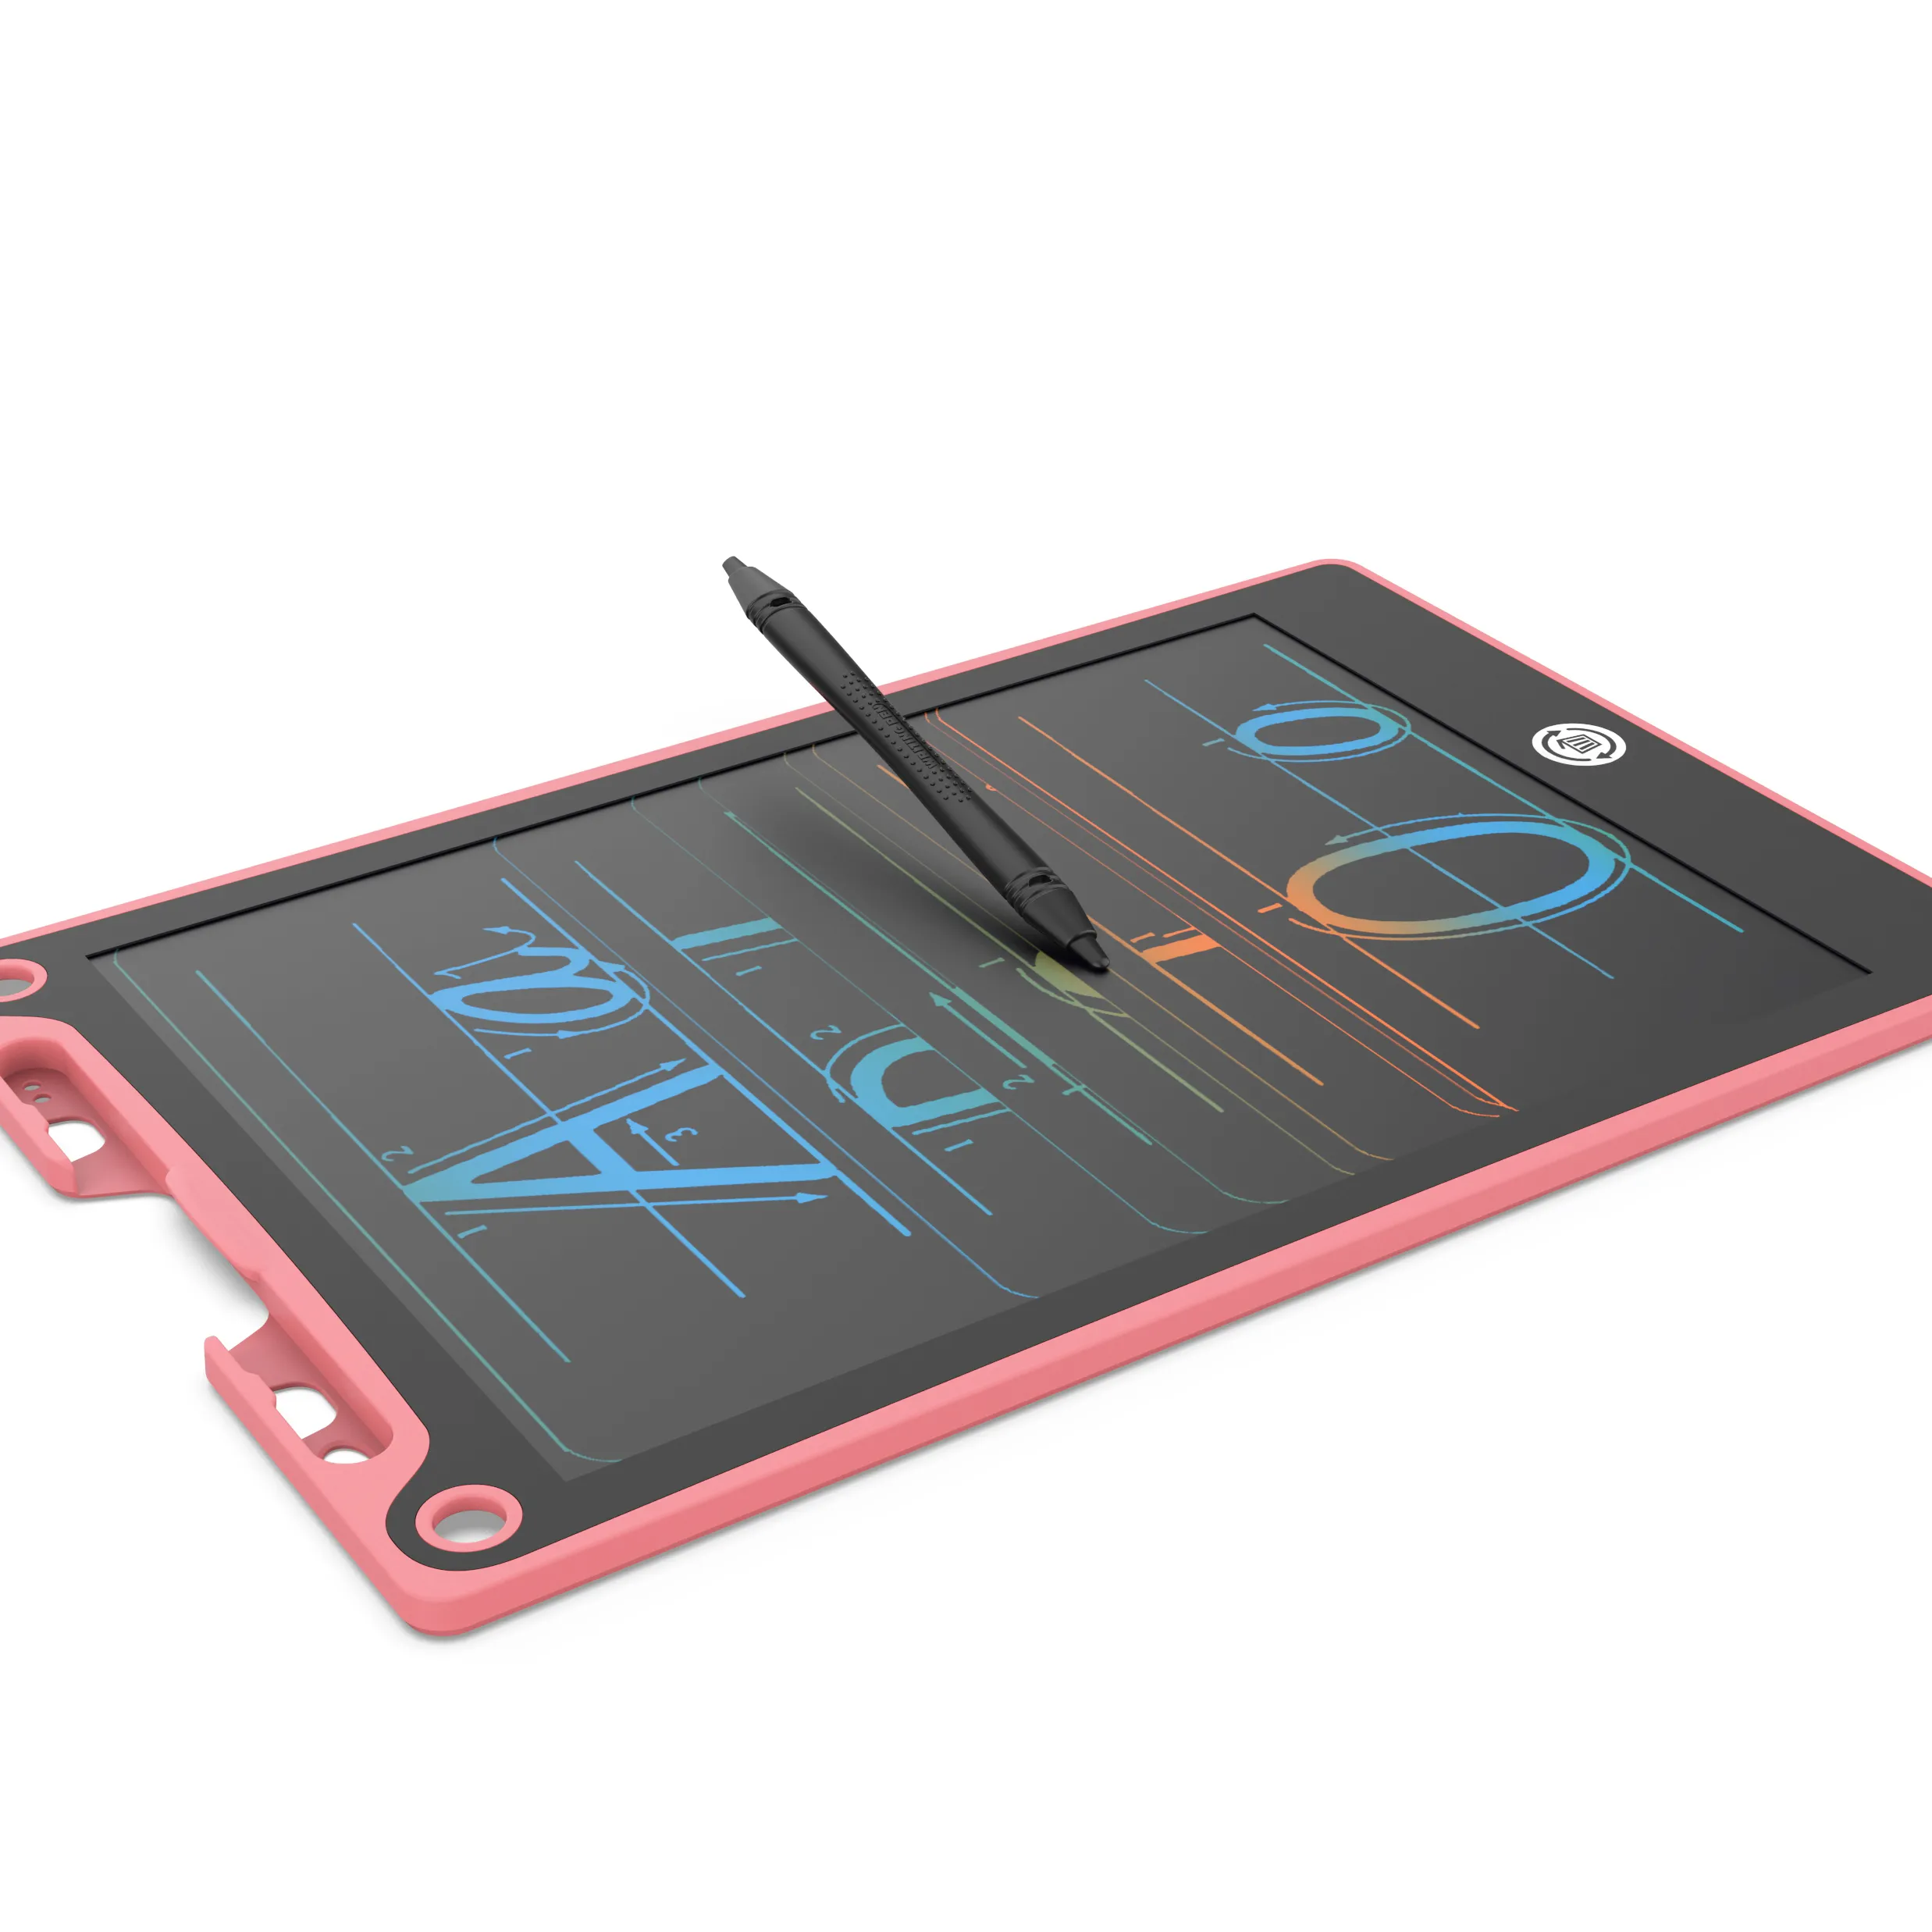 GY nhanh chóng vận chuyển di động tái sử dụng không cần giấy tờ đồ họa điện tử vẽ sketchpad Tablet viết bảng cho trẻ em